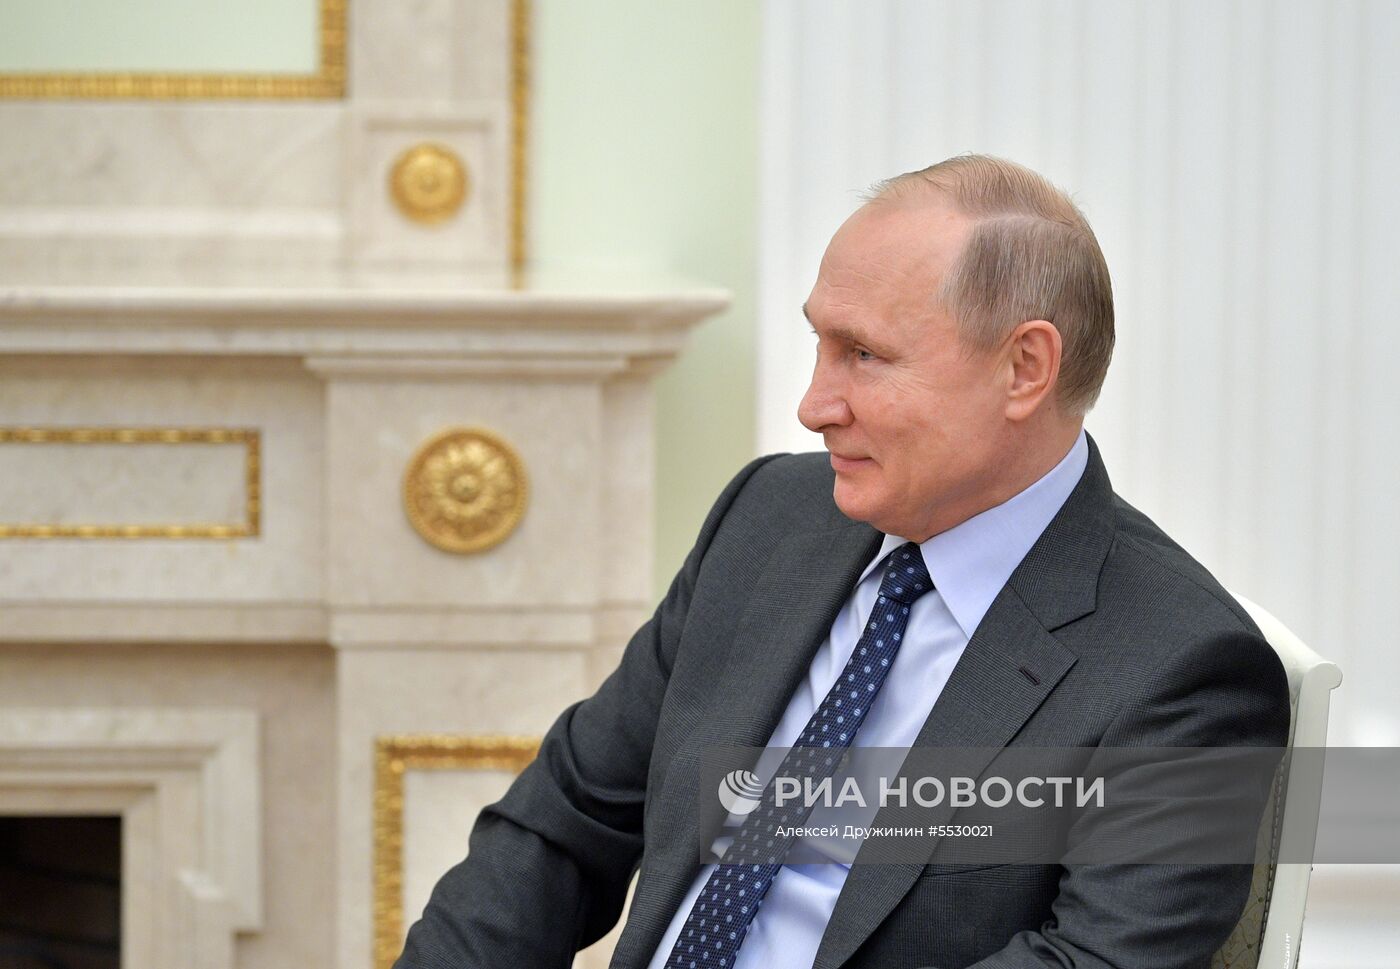 Президент РФ В. Путин встретился с президентом Парагвая М. А. Бенитесом